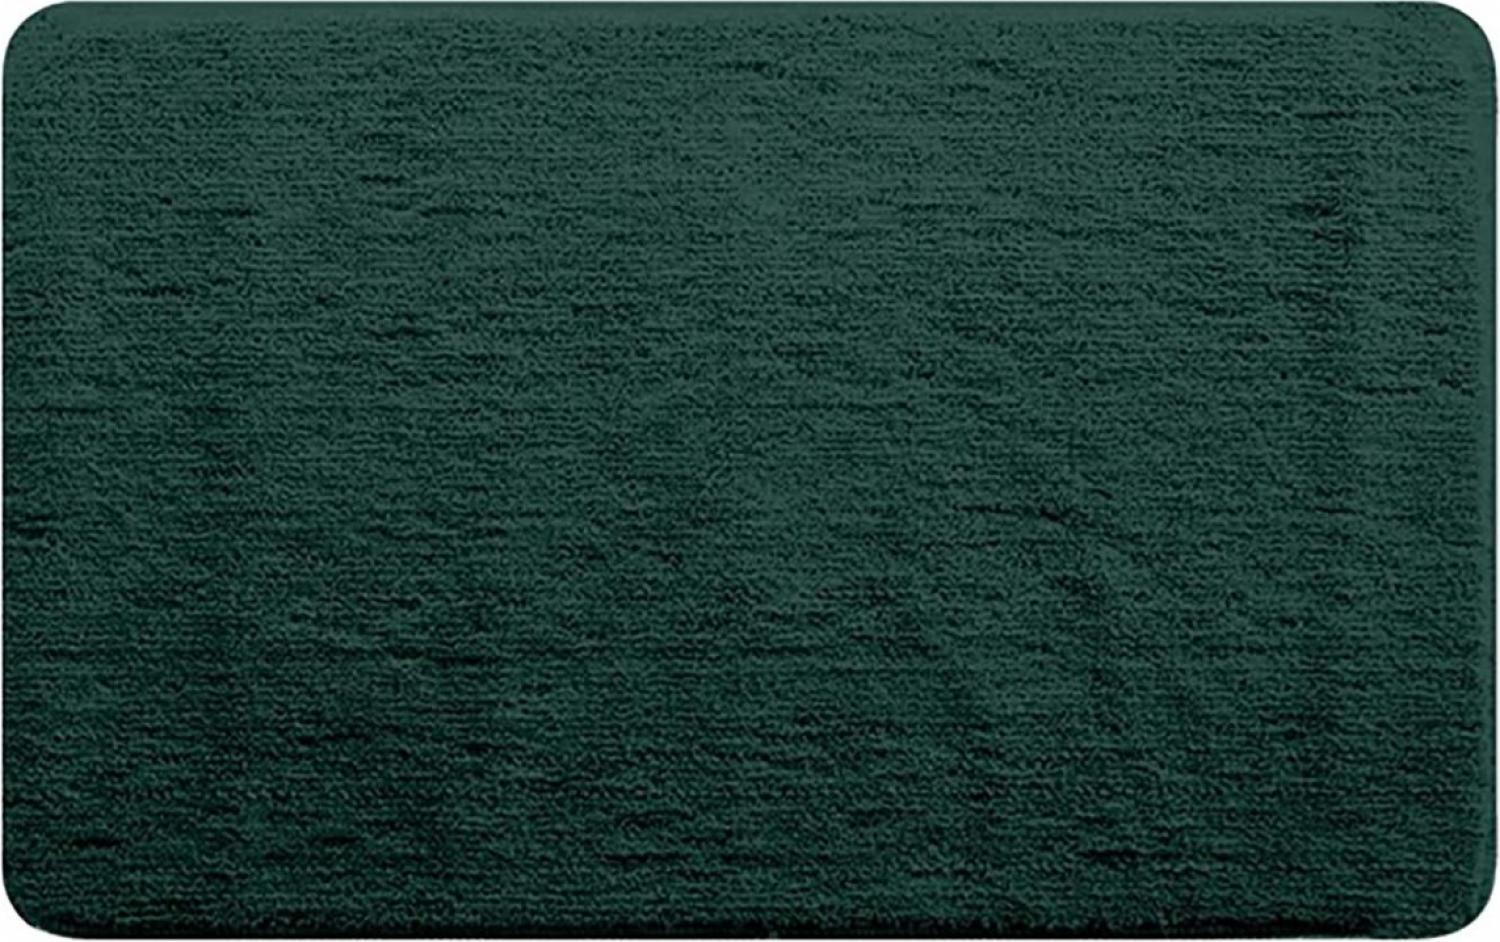 Badteppich Rosario - Dunkelgrün 50 x 80cm Bild 1